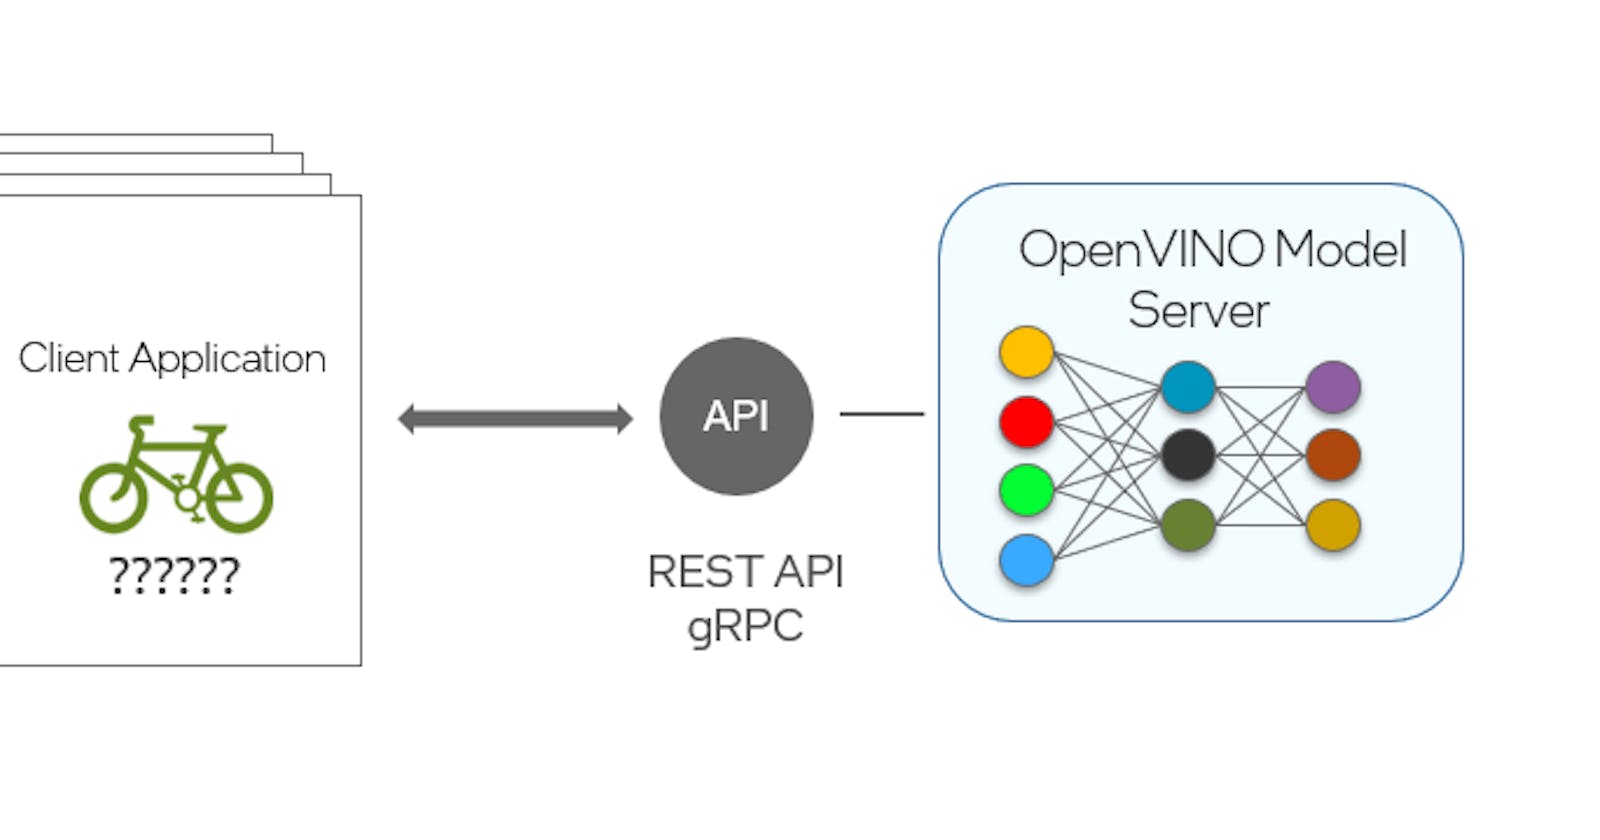 OpenVINO Model Server